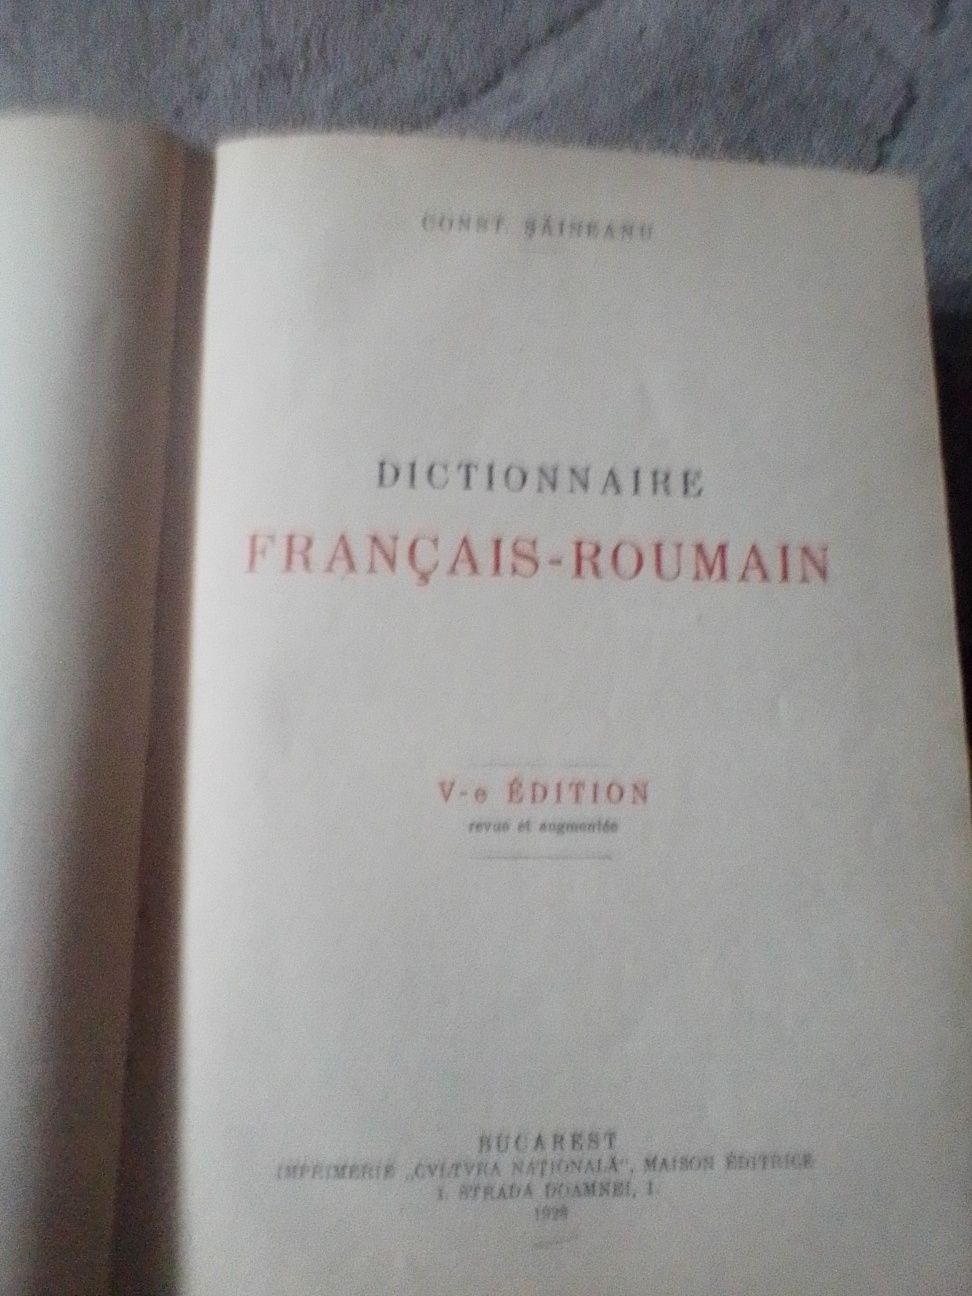 Vând dicționar român -dictionar .editat în 1928